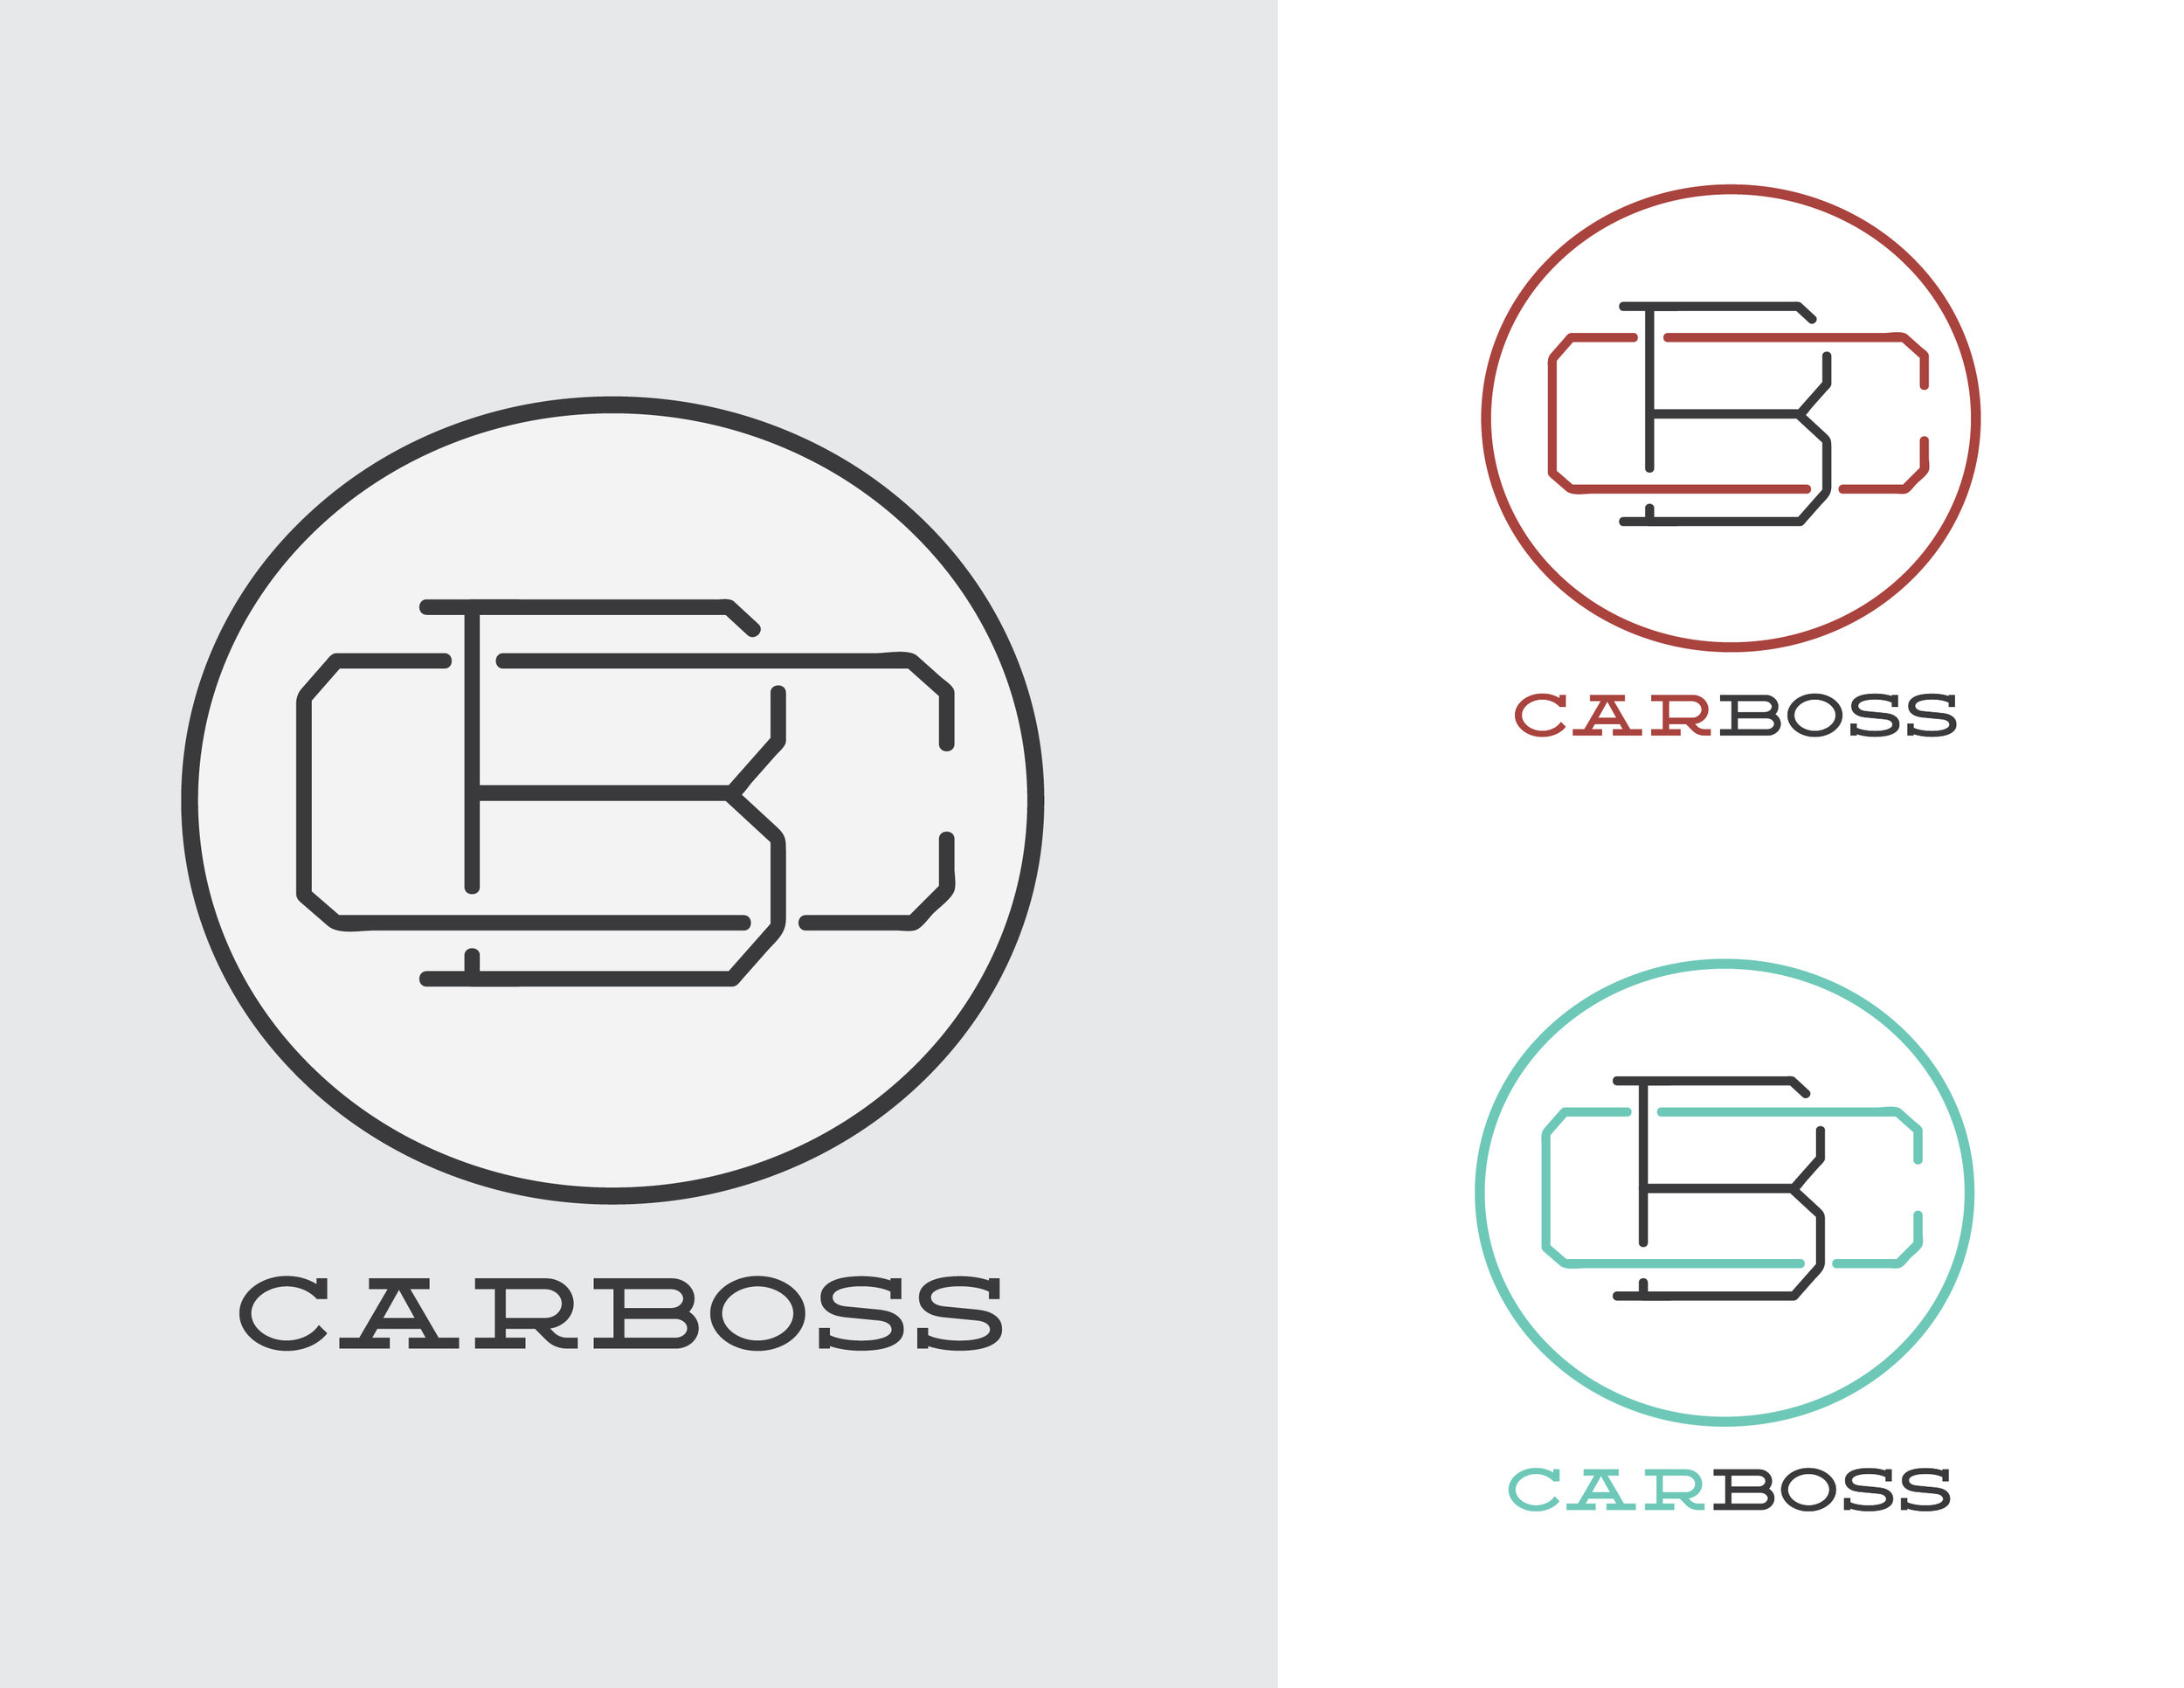 carboss_logo_2-02.jpg